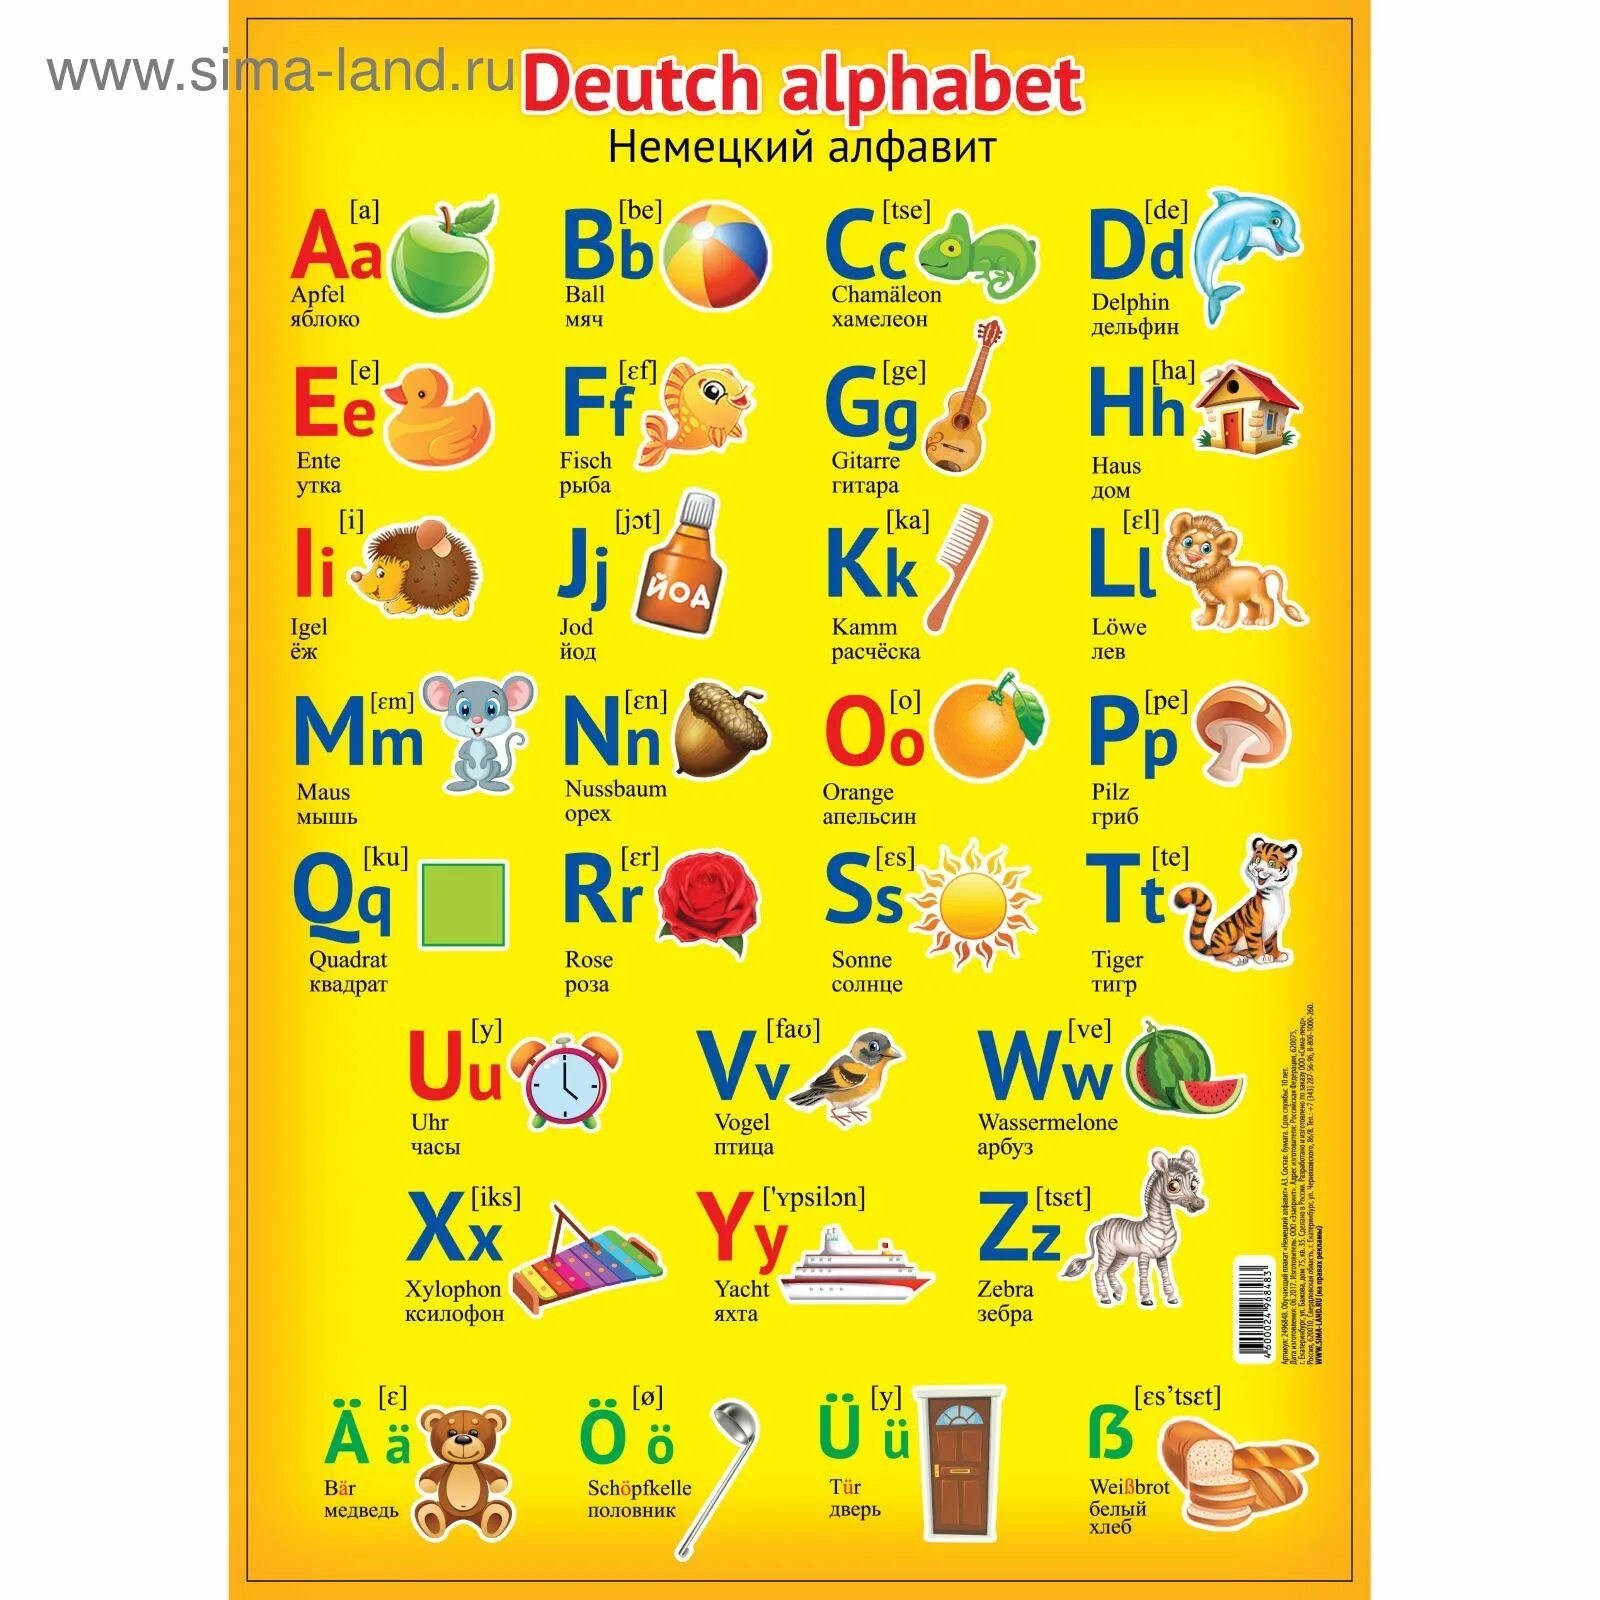 Написать немецкие буквы. Немецкий алфавит. Немецкий алфавит для детей. Немецкий алфавит с произношением. Алфавит немецкого языка с транскрипцией.